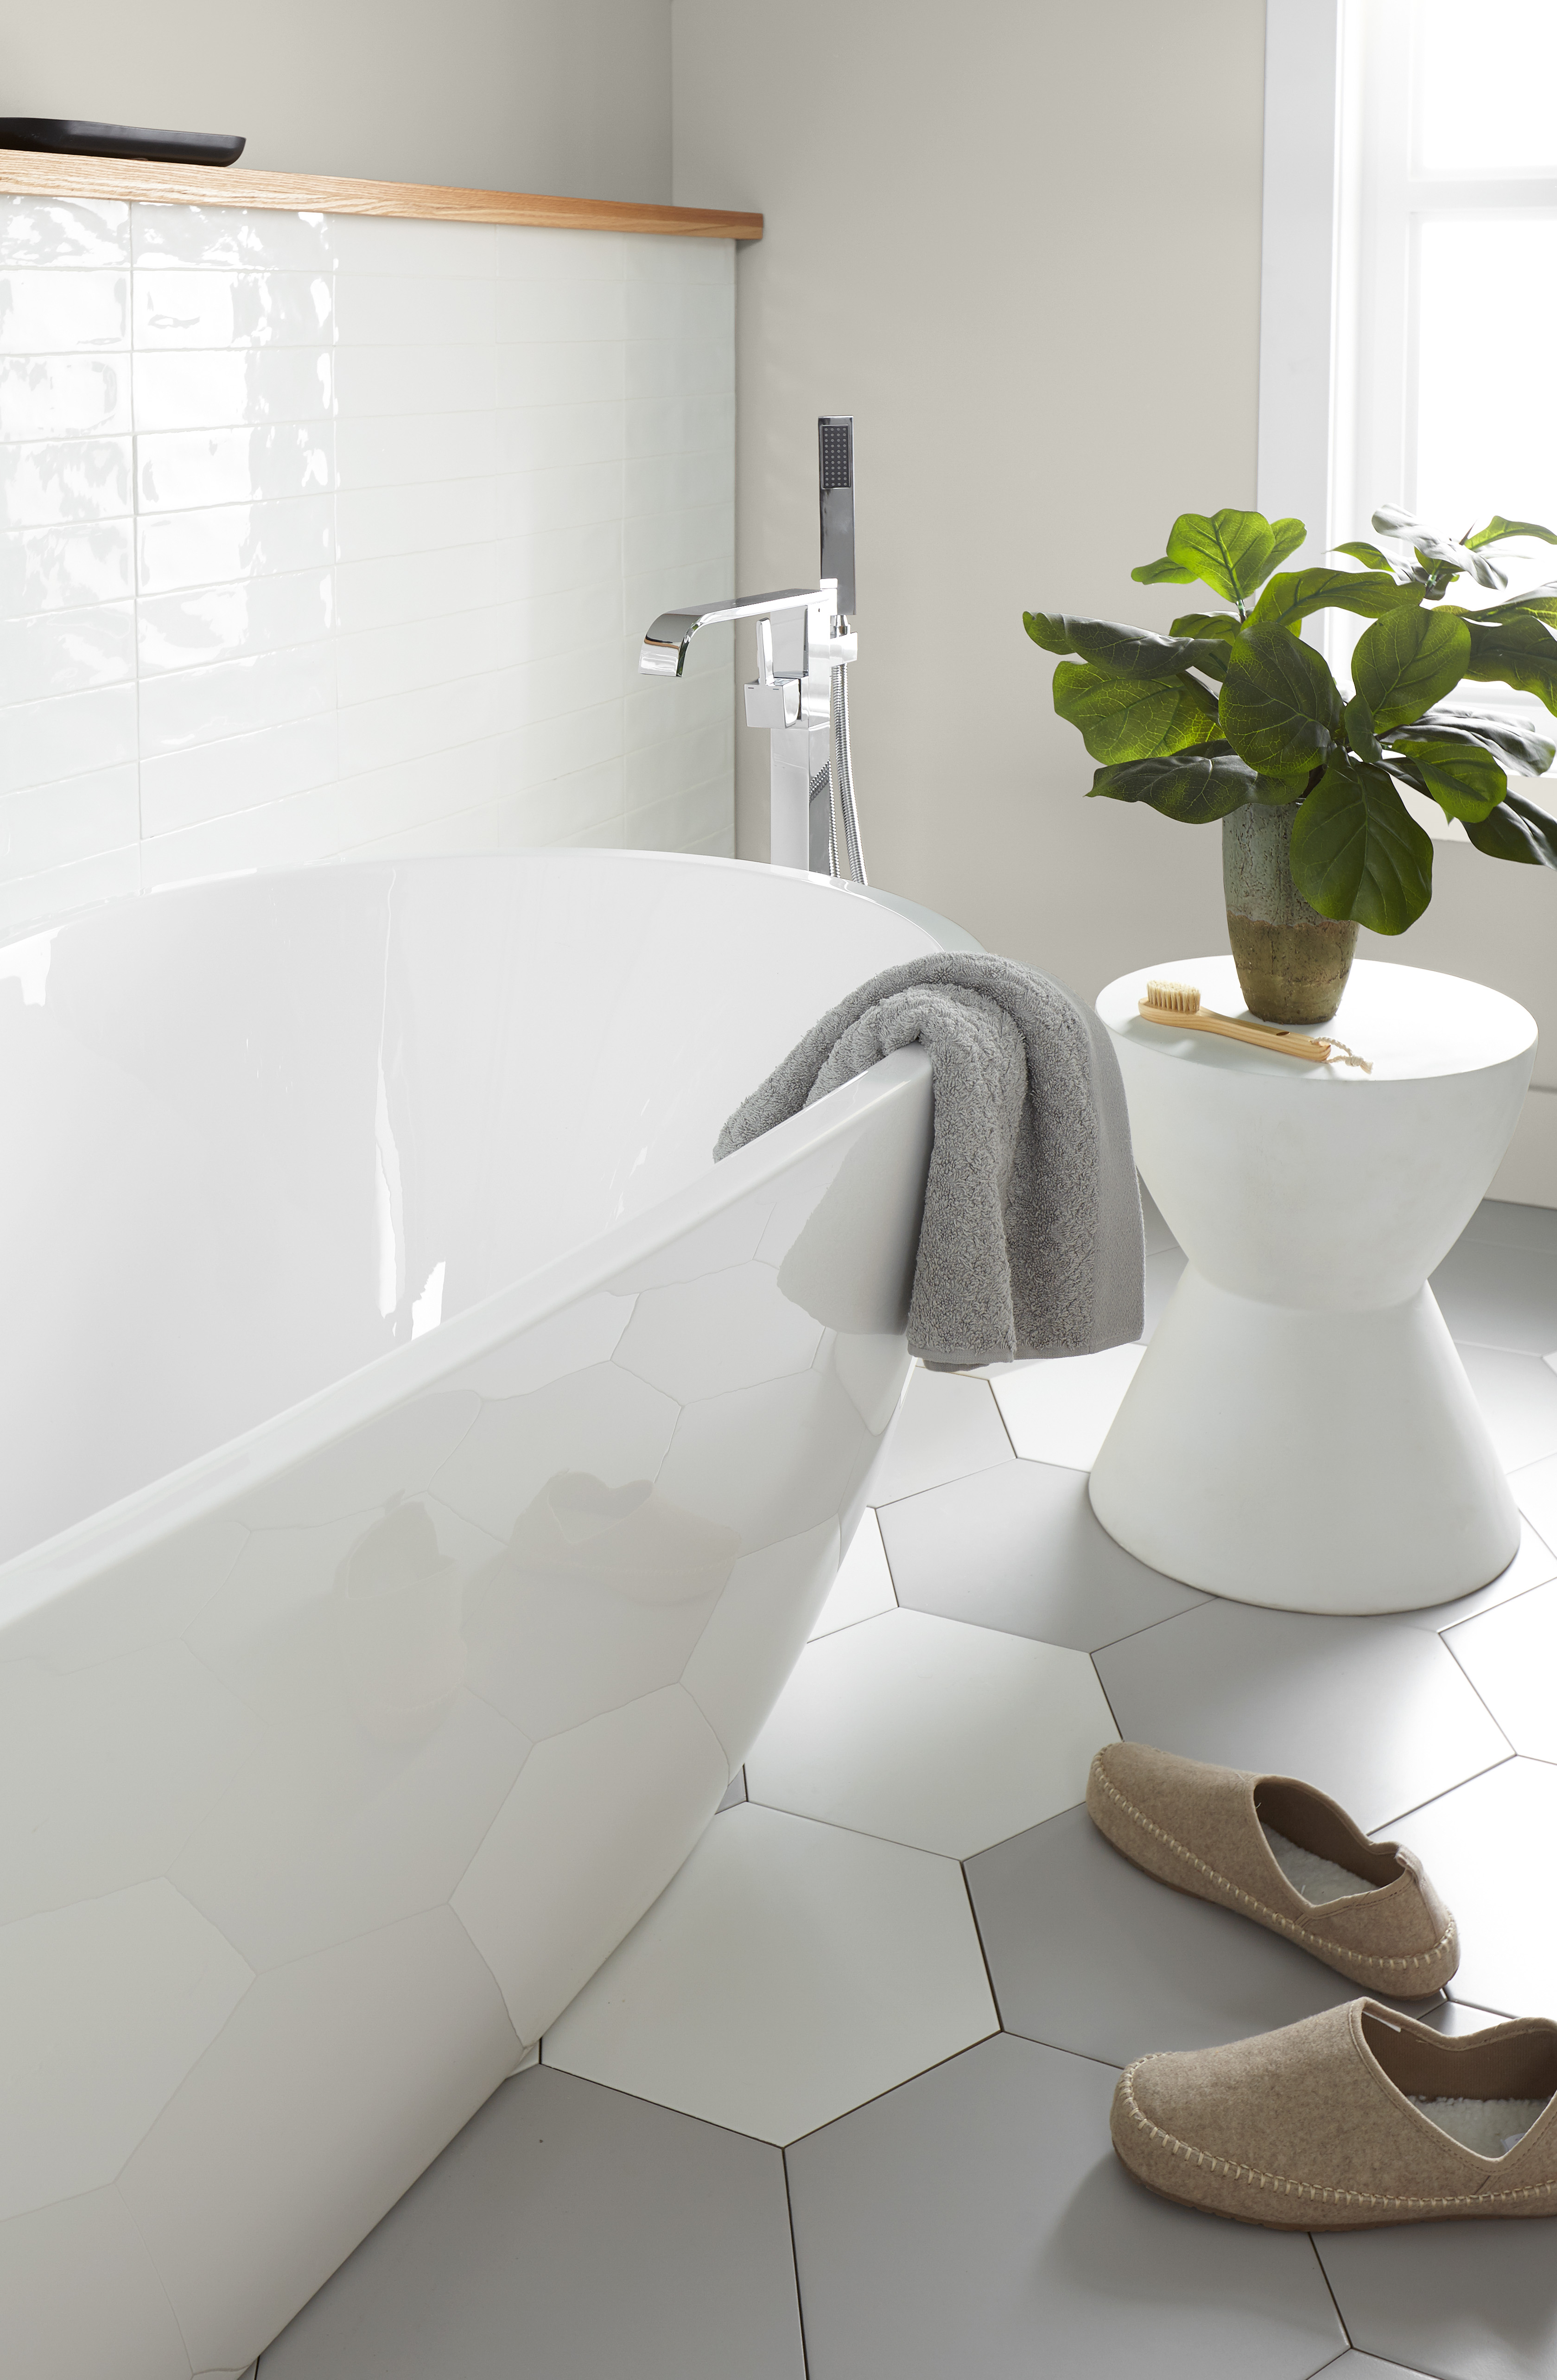 Une salle de bain moderne de style maison de ferme peinte dans une couleur blanche appelée Toile vierge.